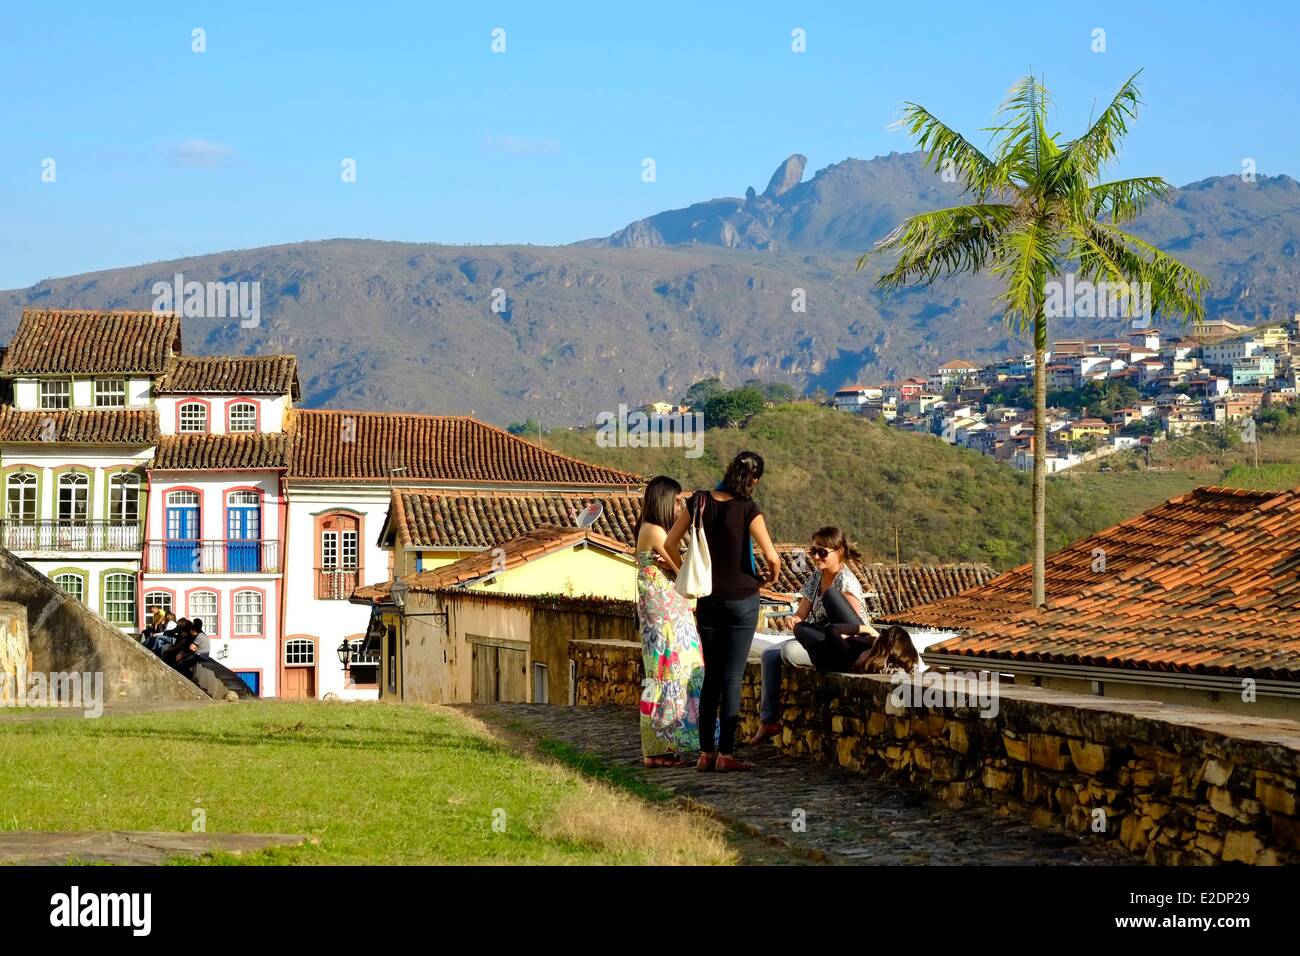 Brasilien Bundesstaates Minas Gerais, Ouro Preto als Weltkulturerbe durch die UNESCO Gstreet Szene im Stadtzentrum und seiner barocken Stockfoto